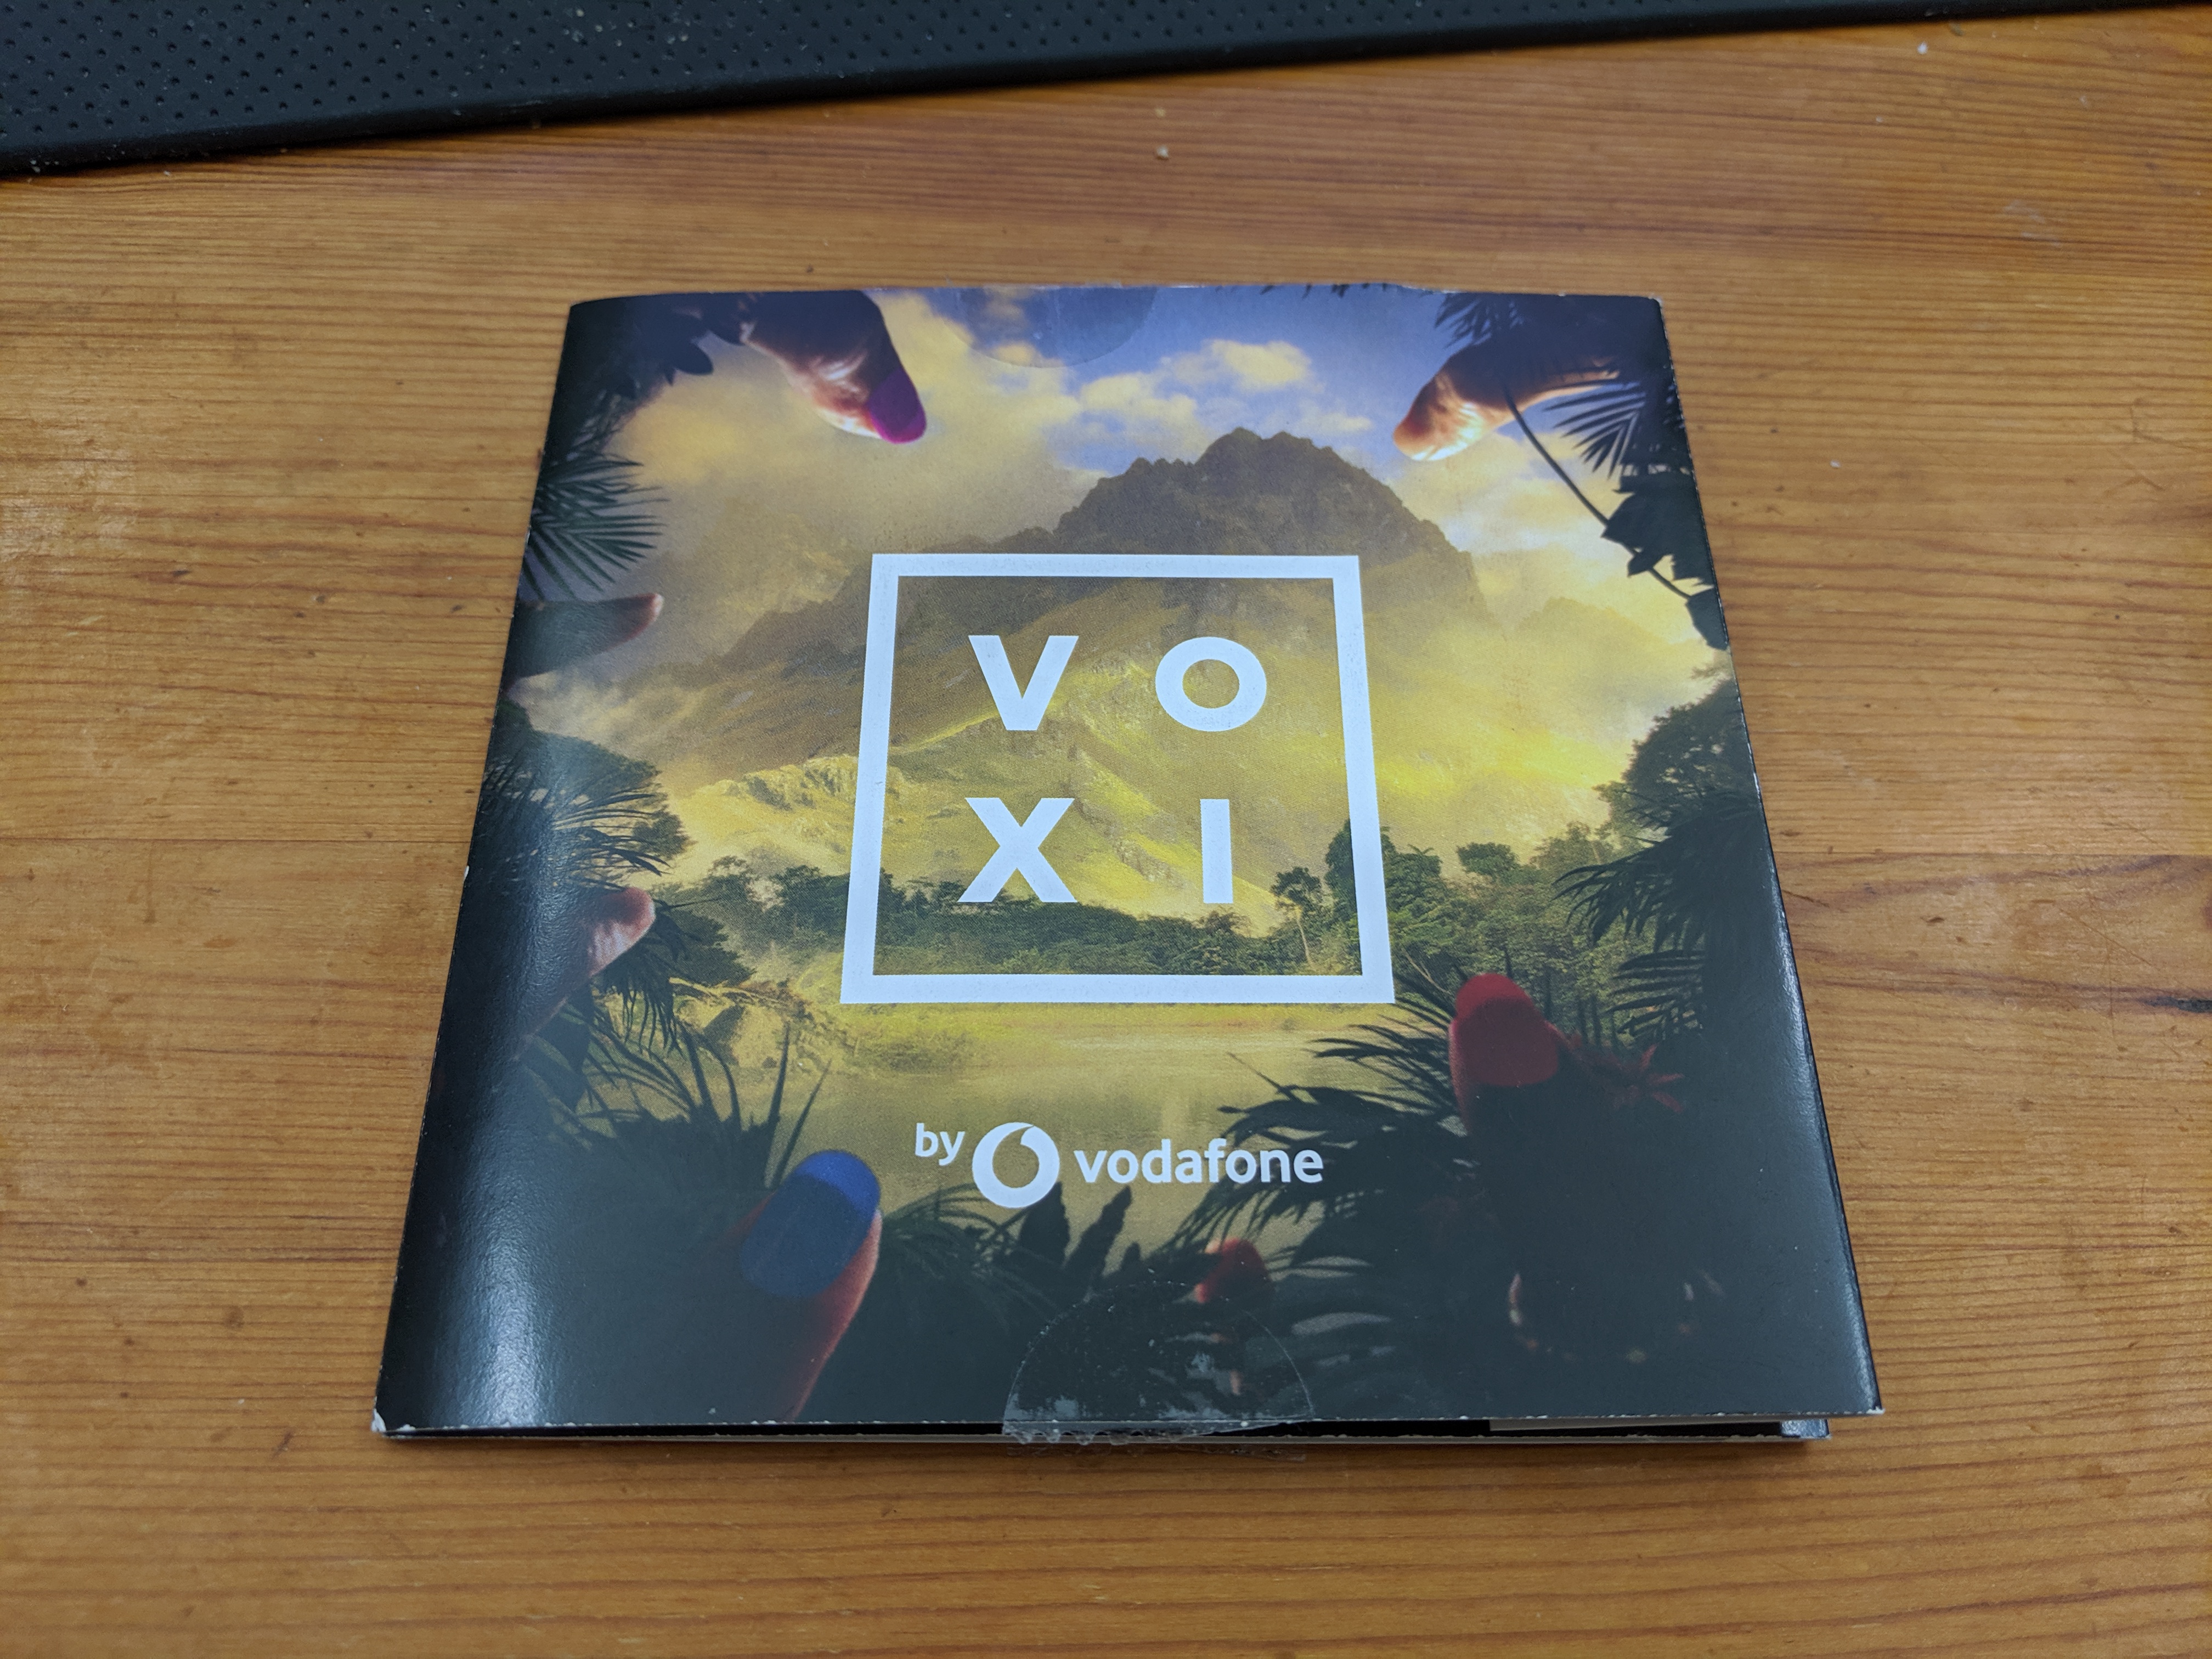 VOXI Review